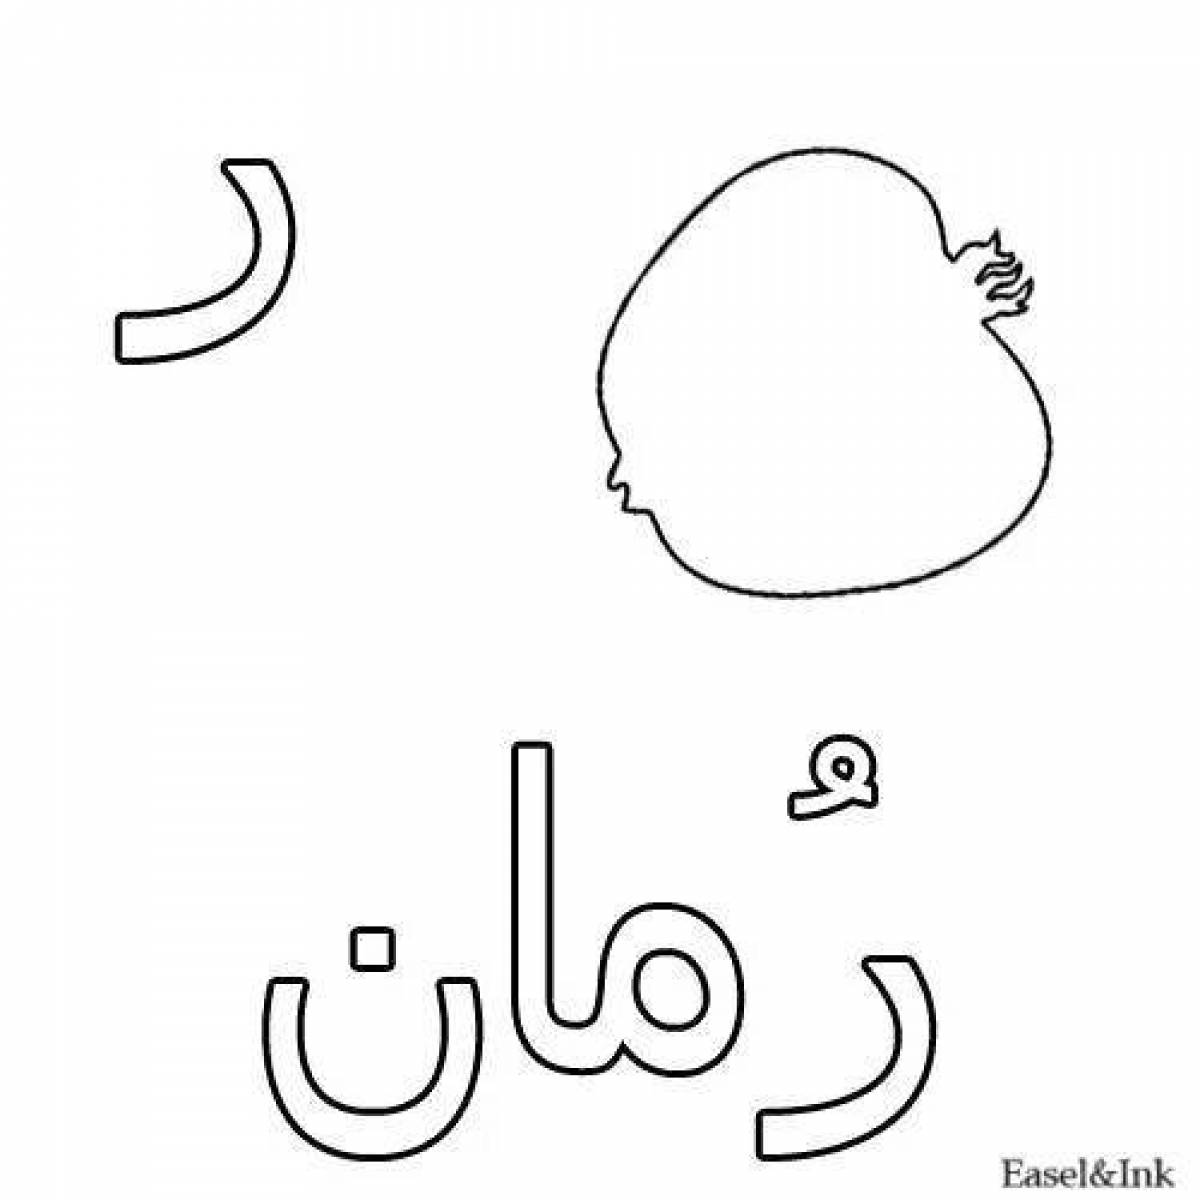 Фото Привлекательная страница раскраски с арабским алфавитом